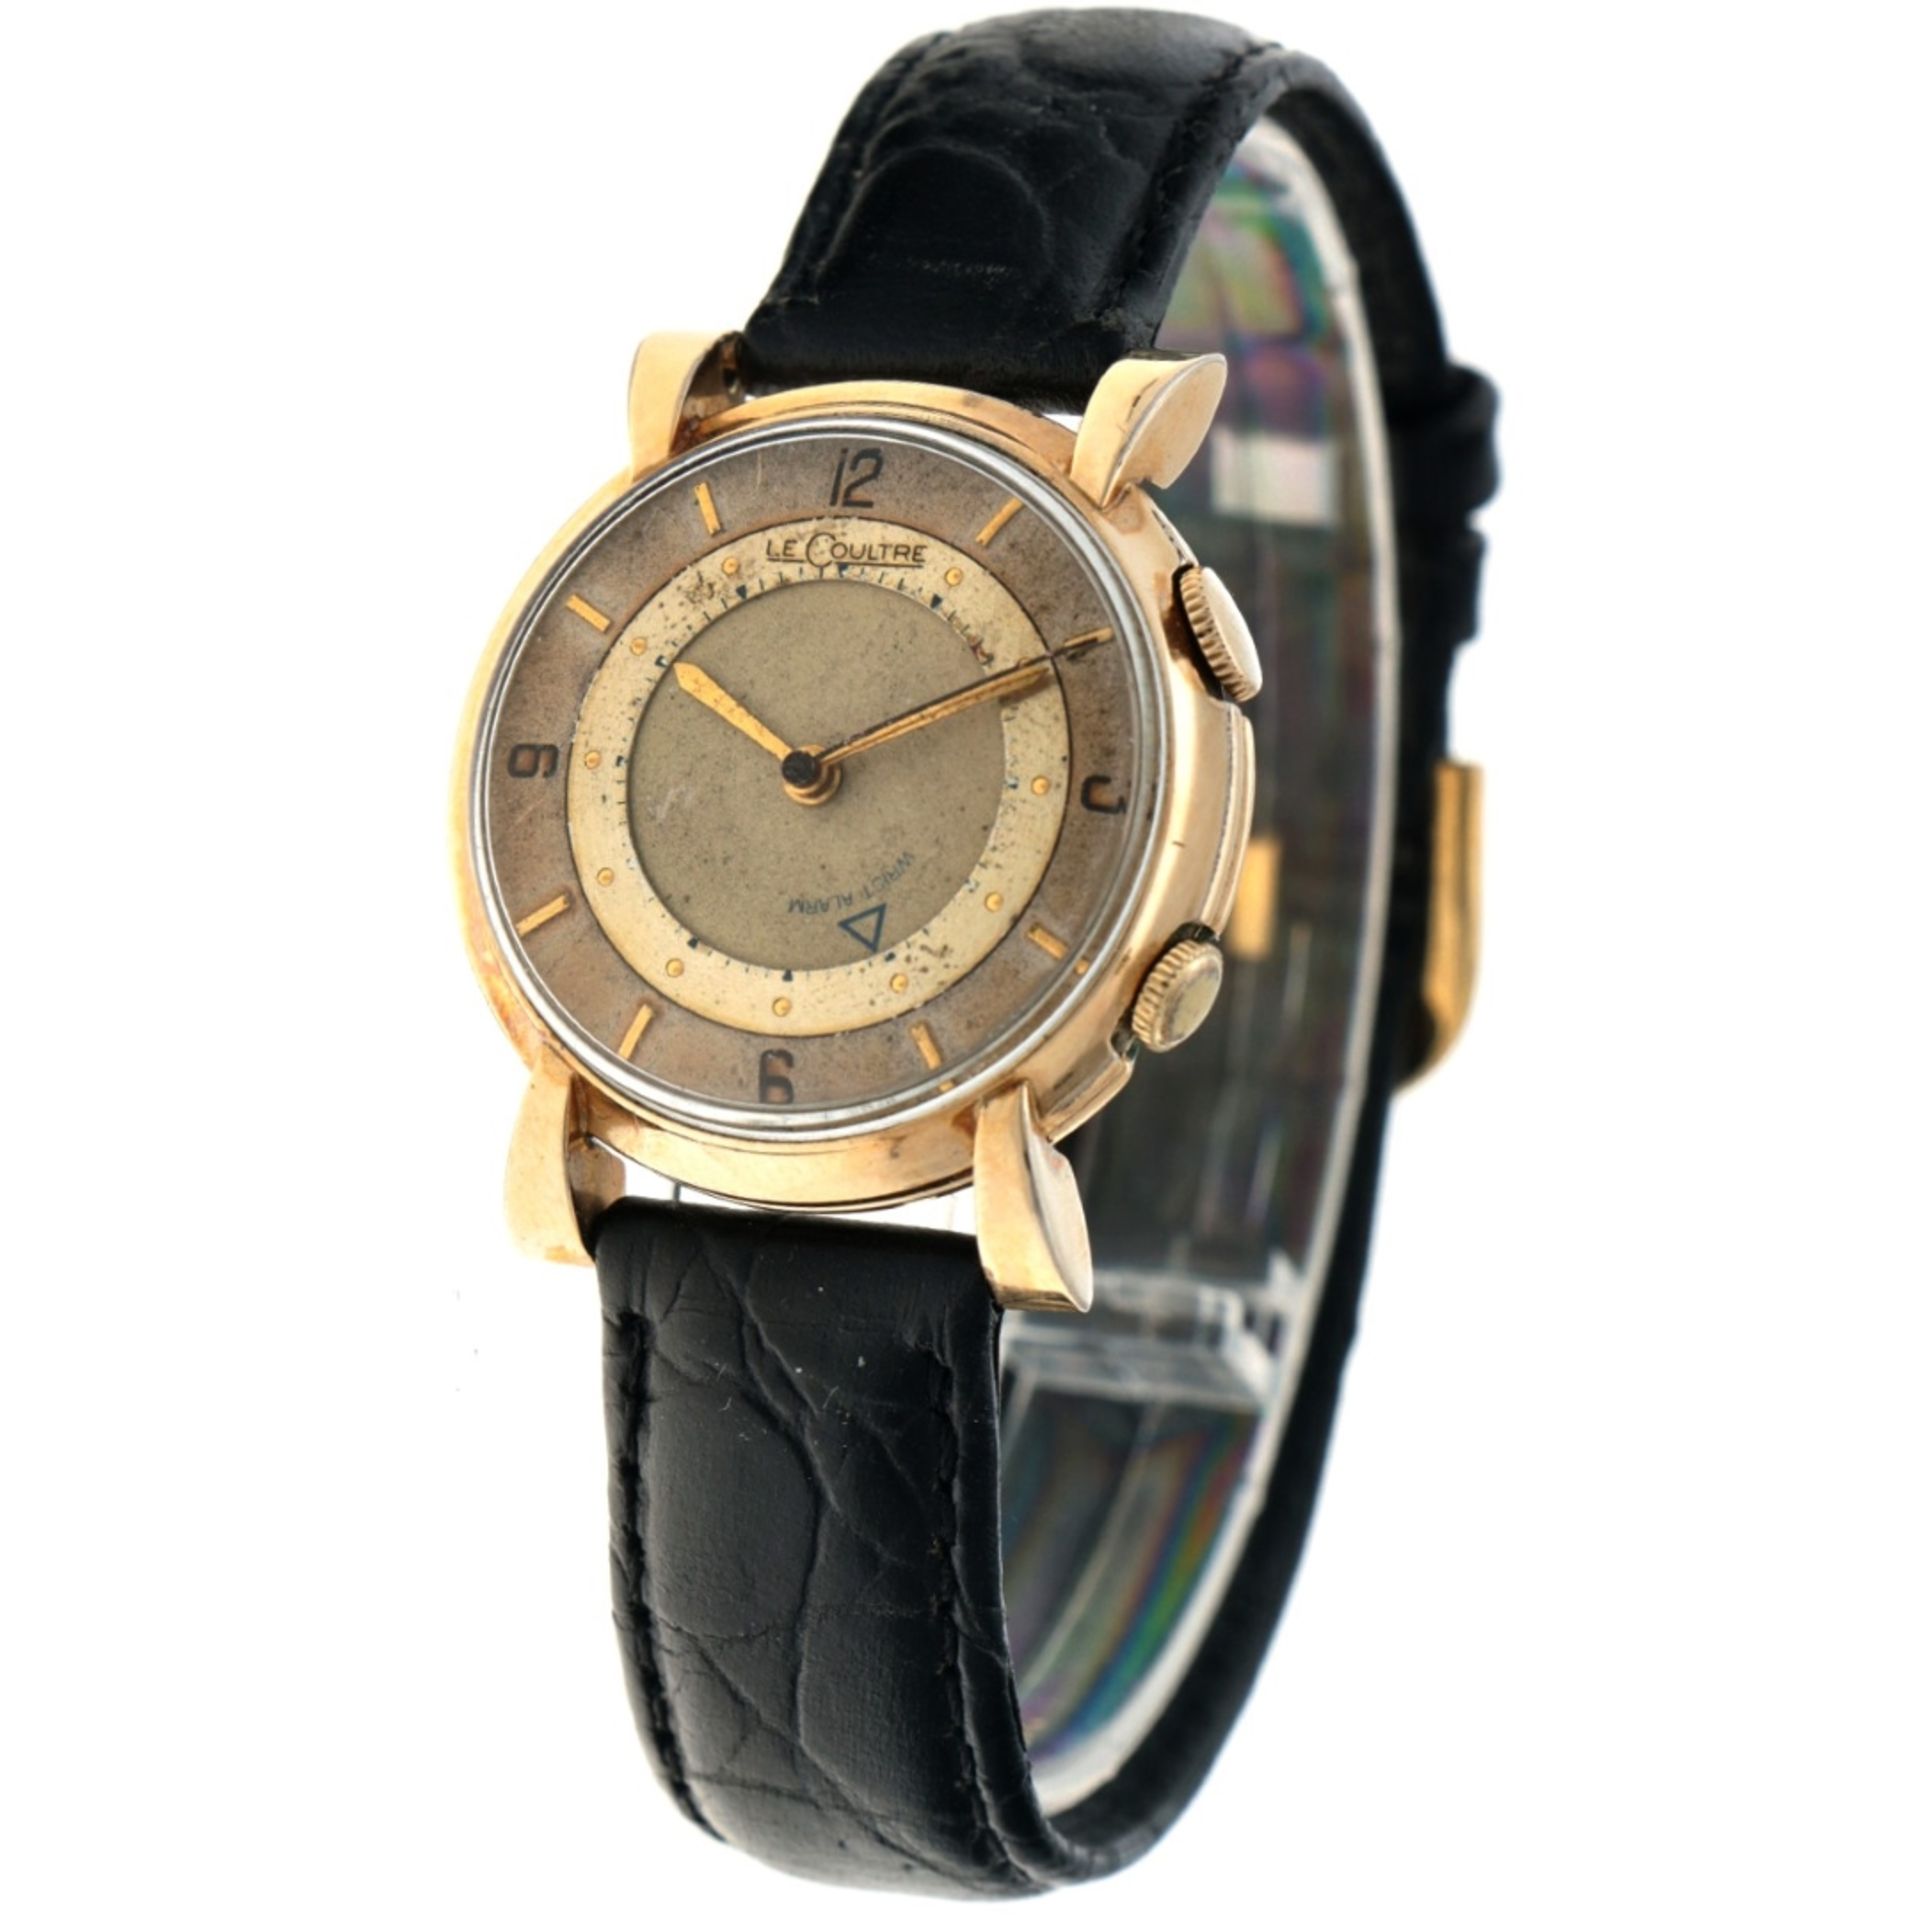 No Reserve - LeCoultre Memovox Cal. 489/1 - Men's watch - approx. 1950's. - Bild 2 aus 6